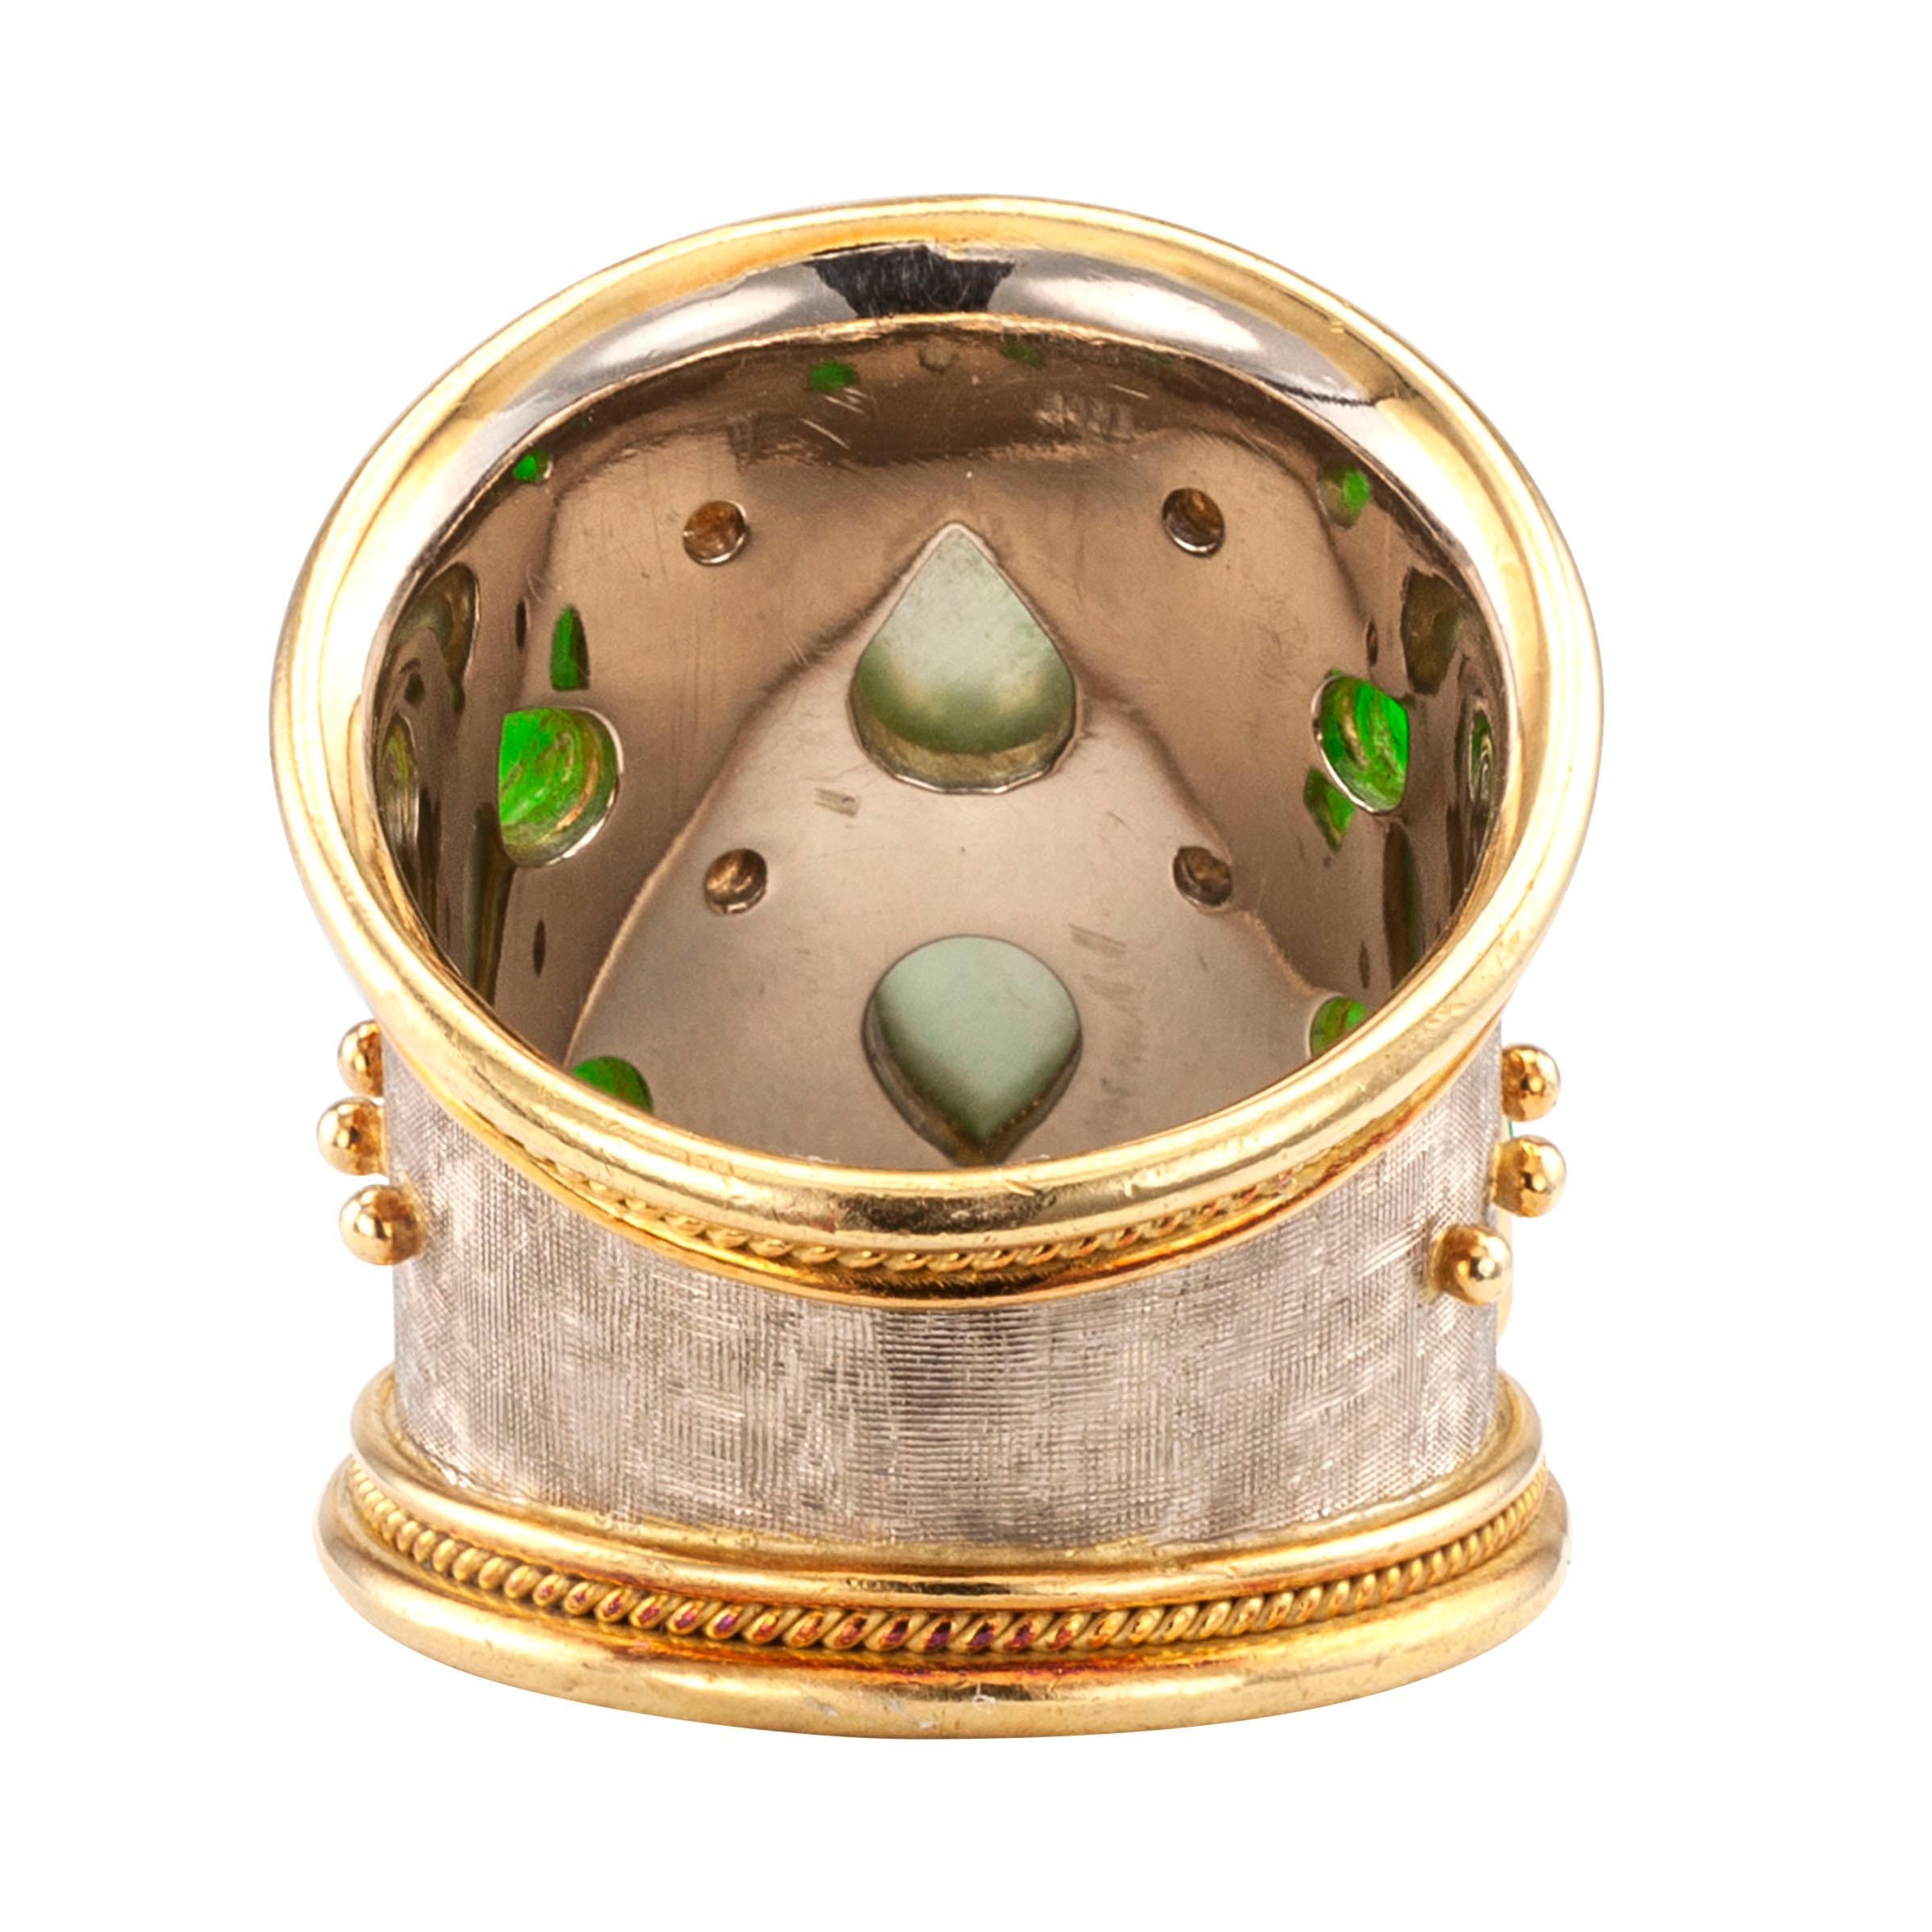 Elizabeth Gage Diamant Jadeit Gold Zigarrenband Ring (Zeitgenössisch)